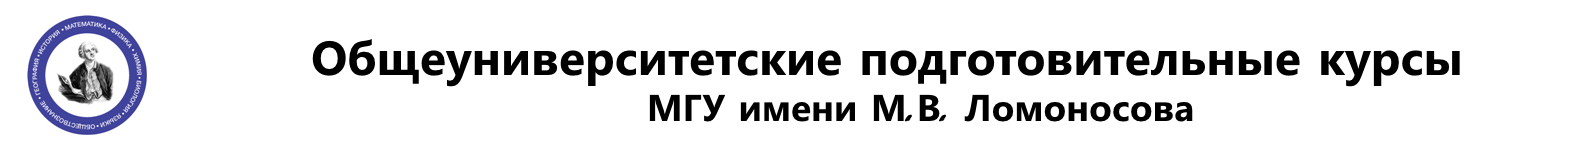 Логотип Общеуниверситетские подготовительные курсы